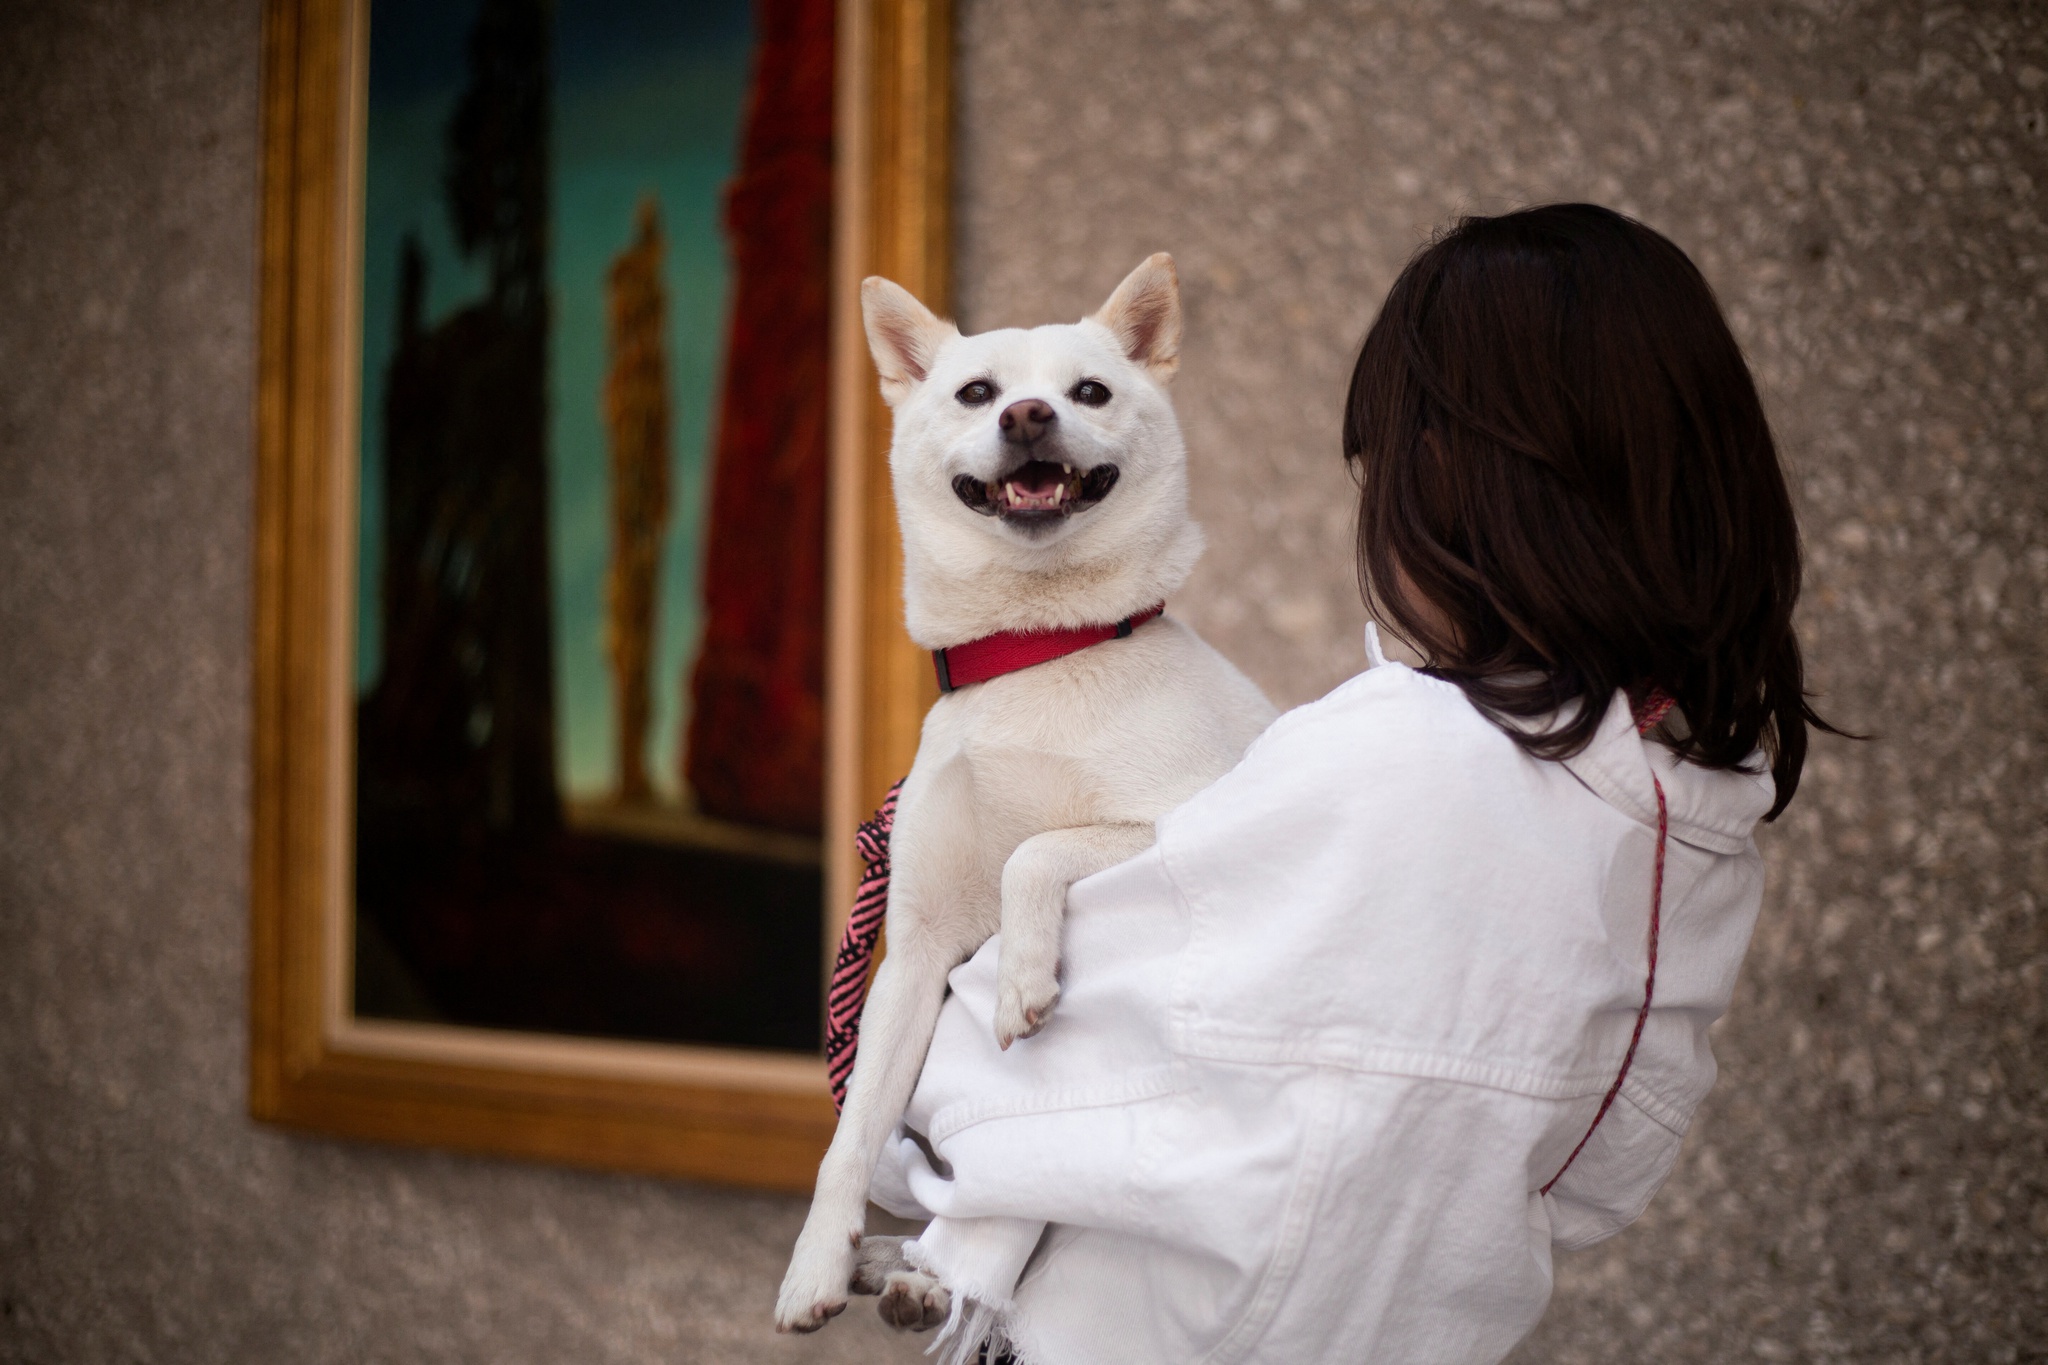 En México, esta exhibición trae dueños y perros al museo |  Perros